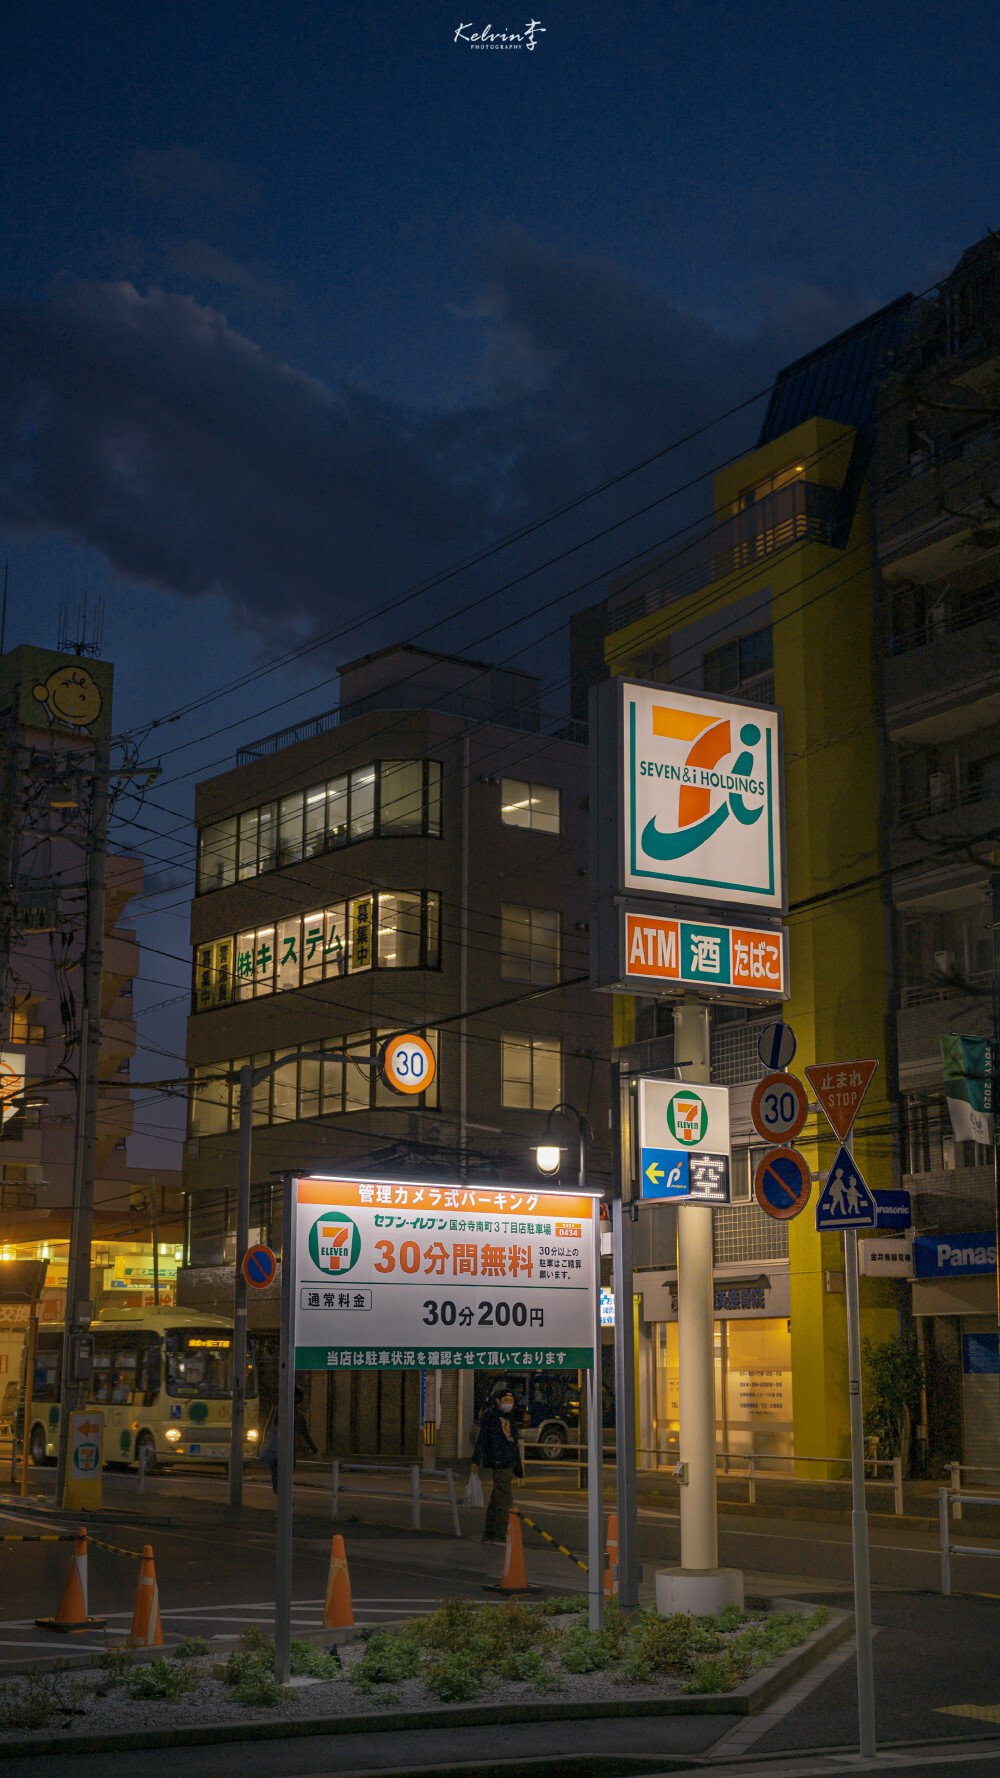 夜景 日本 樱 街道图源水印 